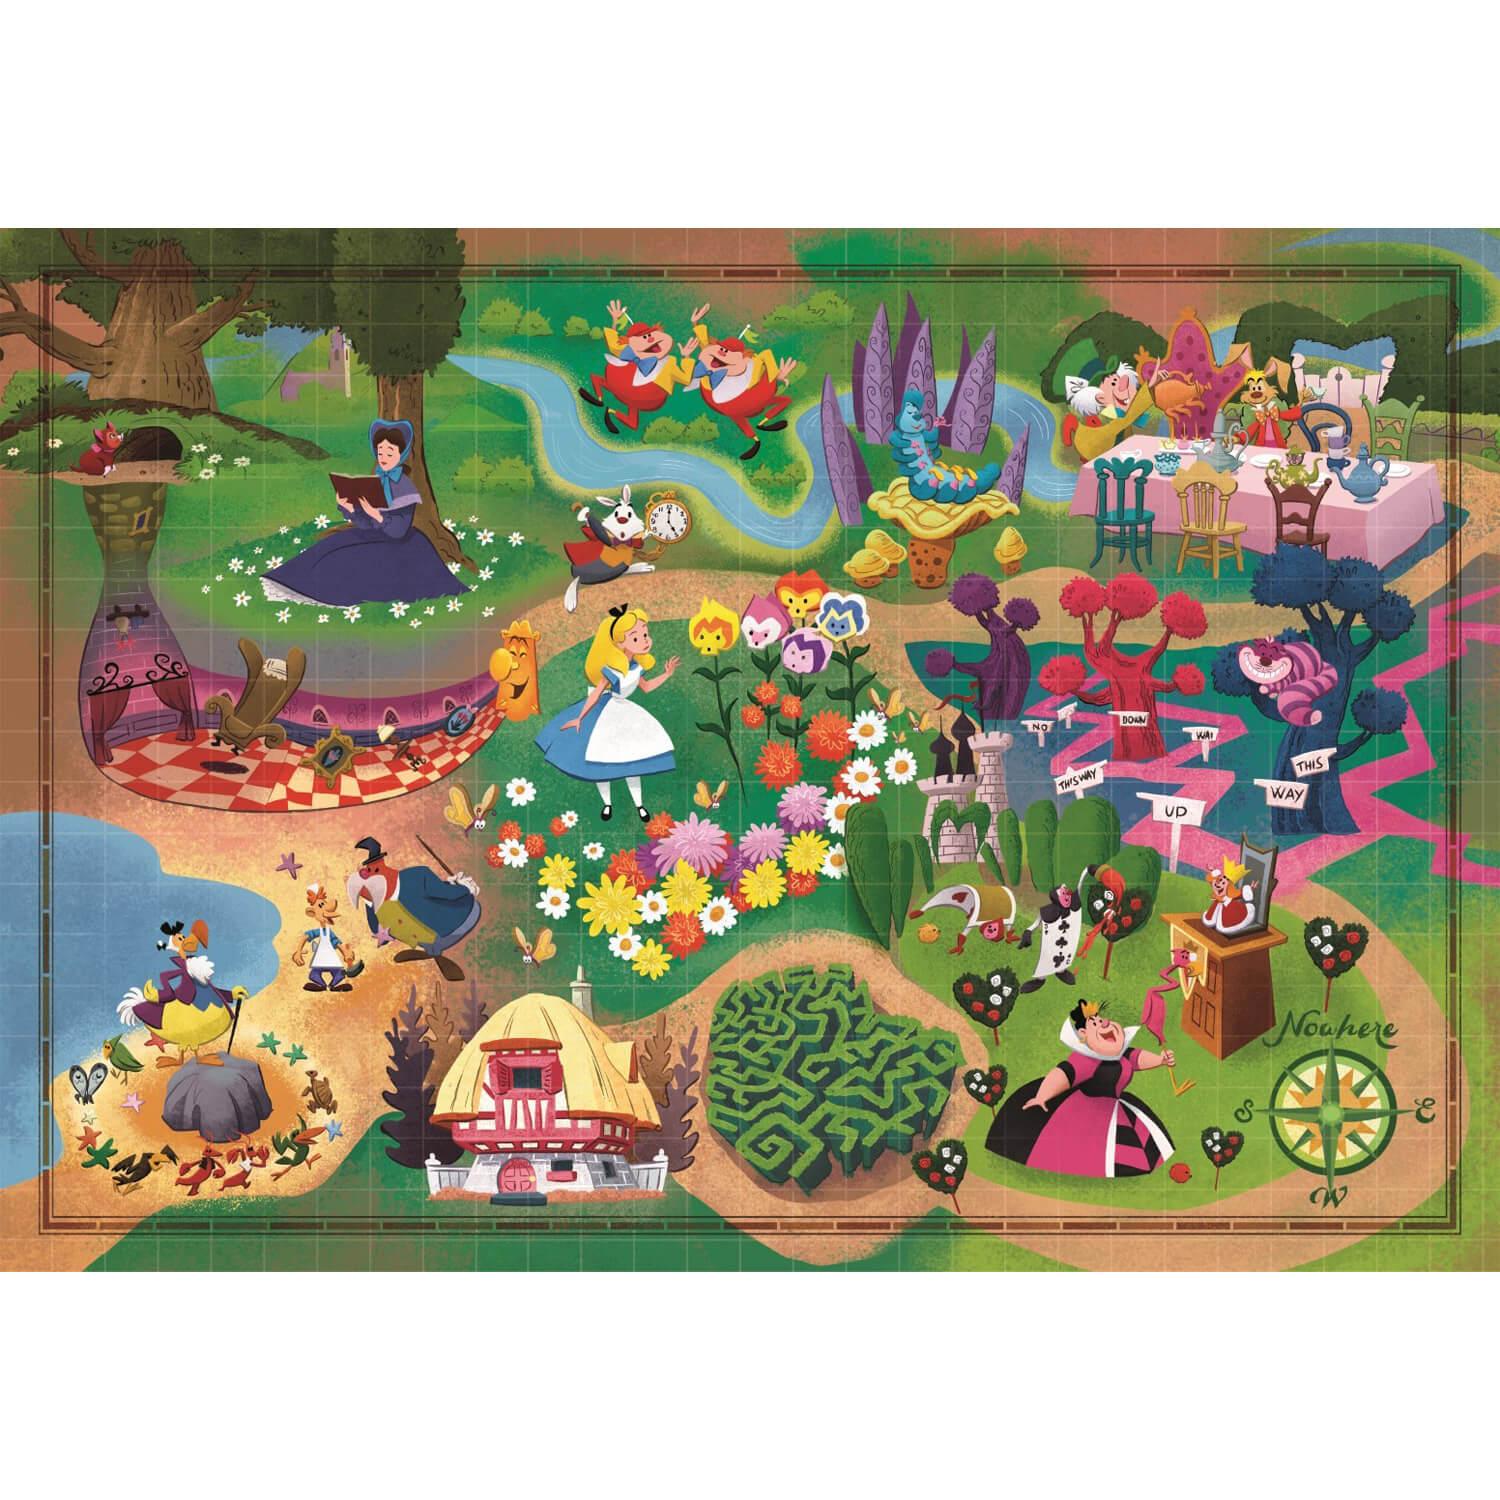 Puzzle 1000 pièces - Disney 100 ans - Célébration - Le temps d'un jeu